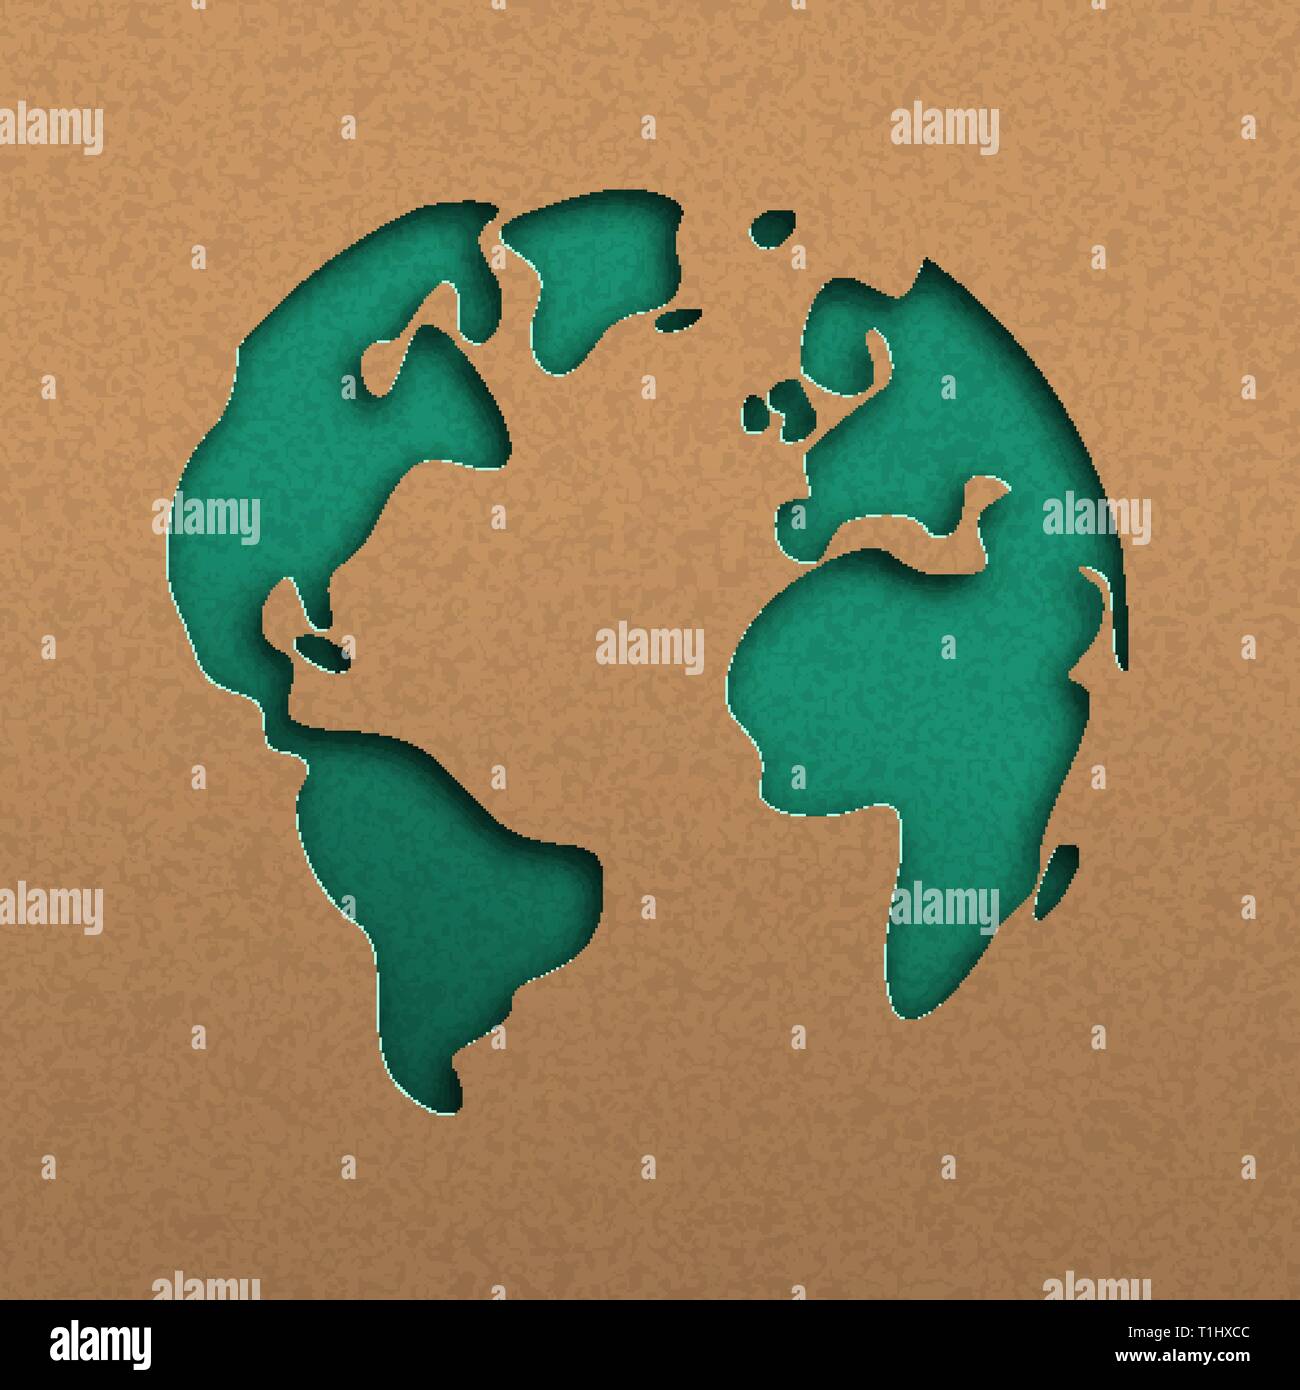 Papercut Weltkarte Abbildung. Grün Ausschnitt der Erde in Recyclingpapier für Planet Erhaltung Bewusstsein. Stock Vektor